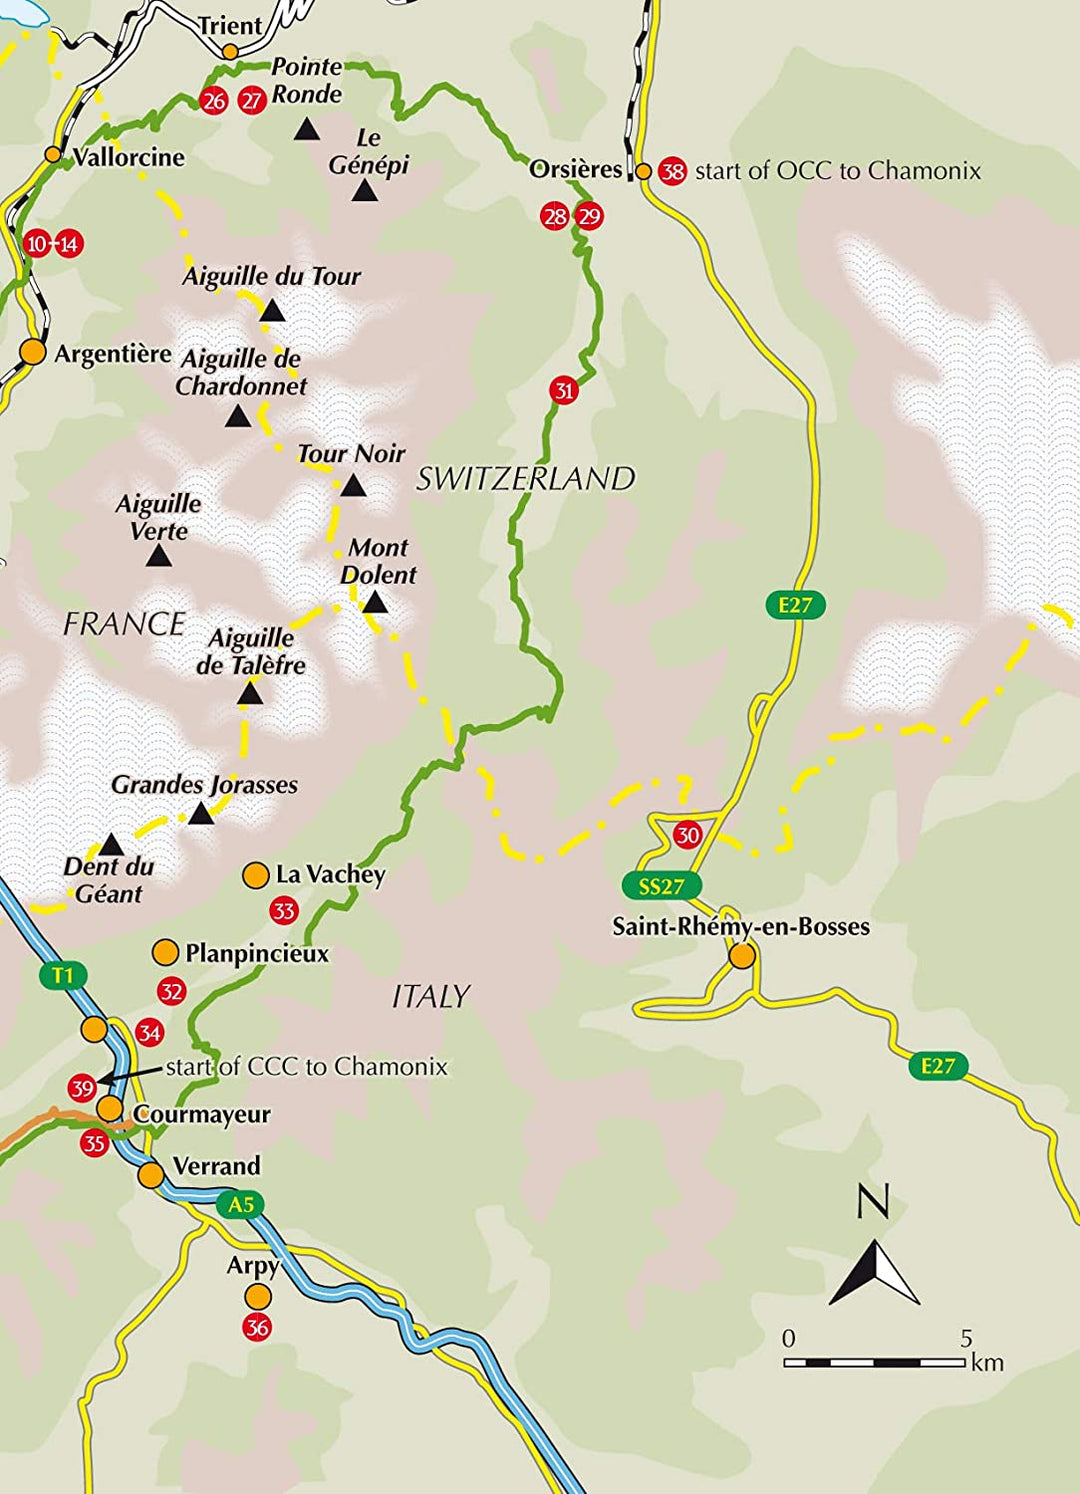 Guide de randonnées (en anglais) - Chamonix & the Mont Blanc region Trail Running | Cicerone guide de randonnée Cicerone 